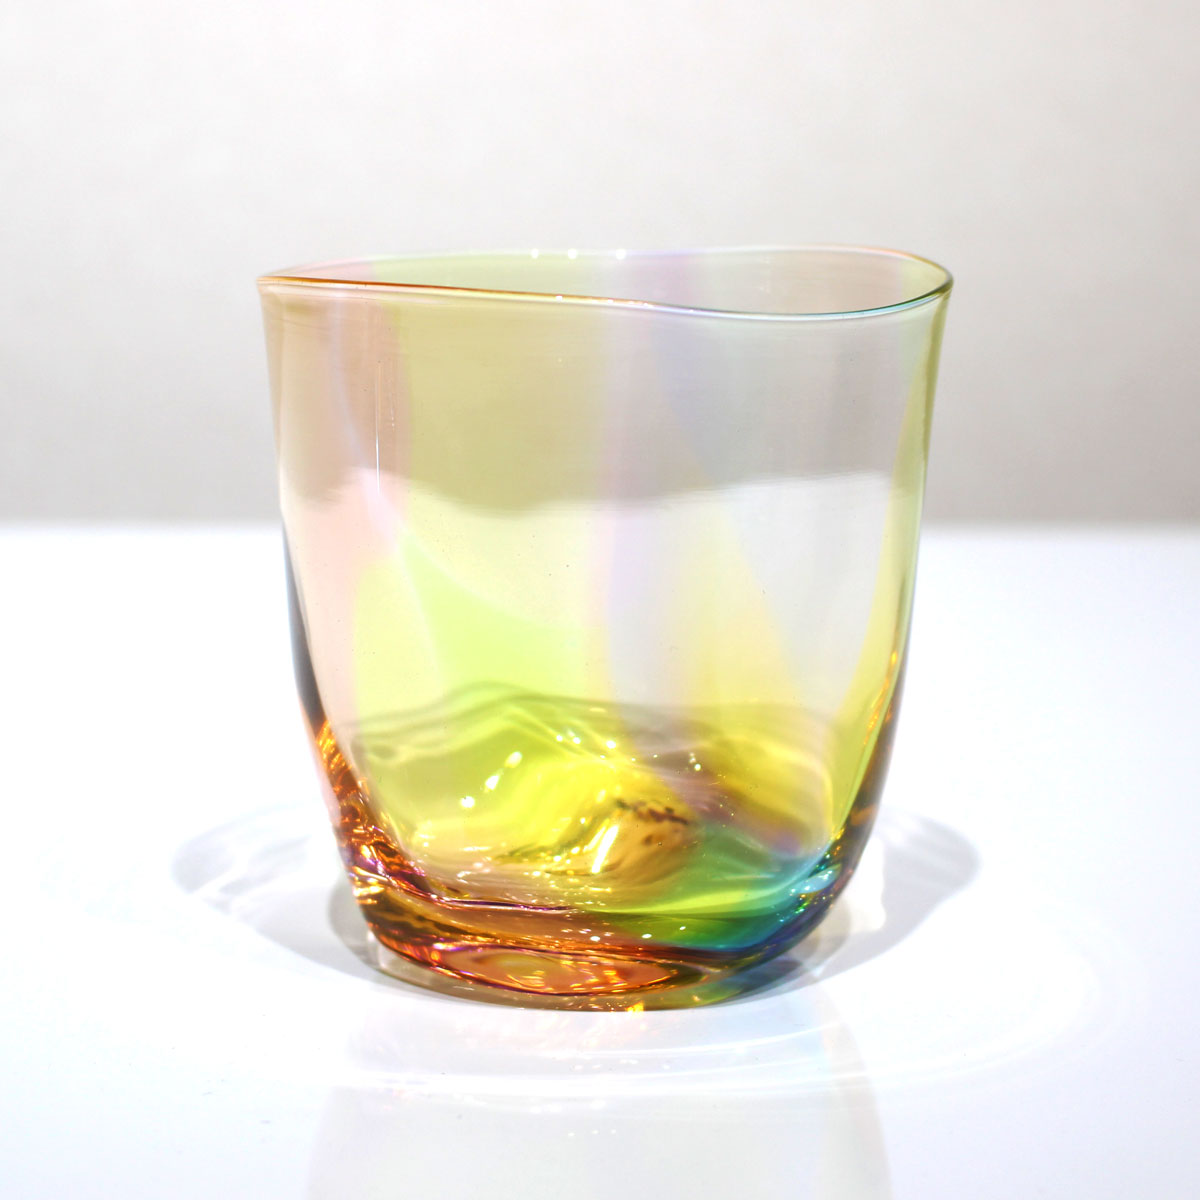 glasscalico グラスキャリコ ハンドメイド ガラス酒器 ミナモプリズム ロックグラス ウイスキー 焼酎 カクテル 梅酒 グラス